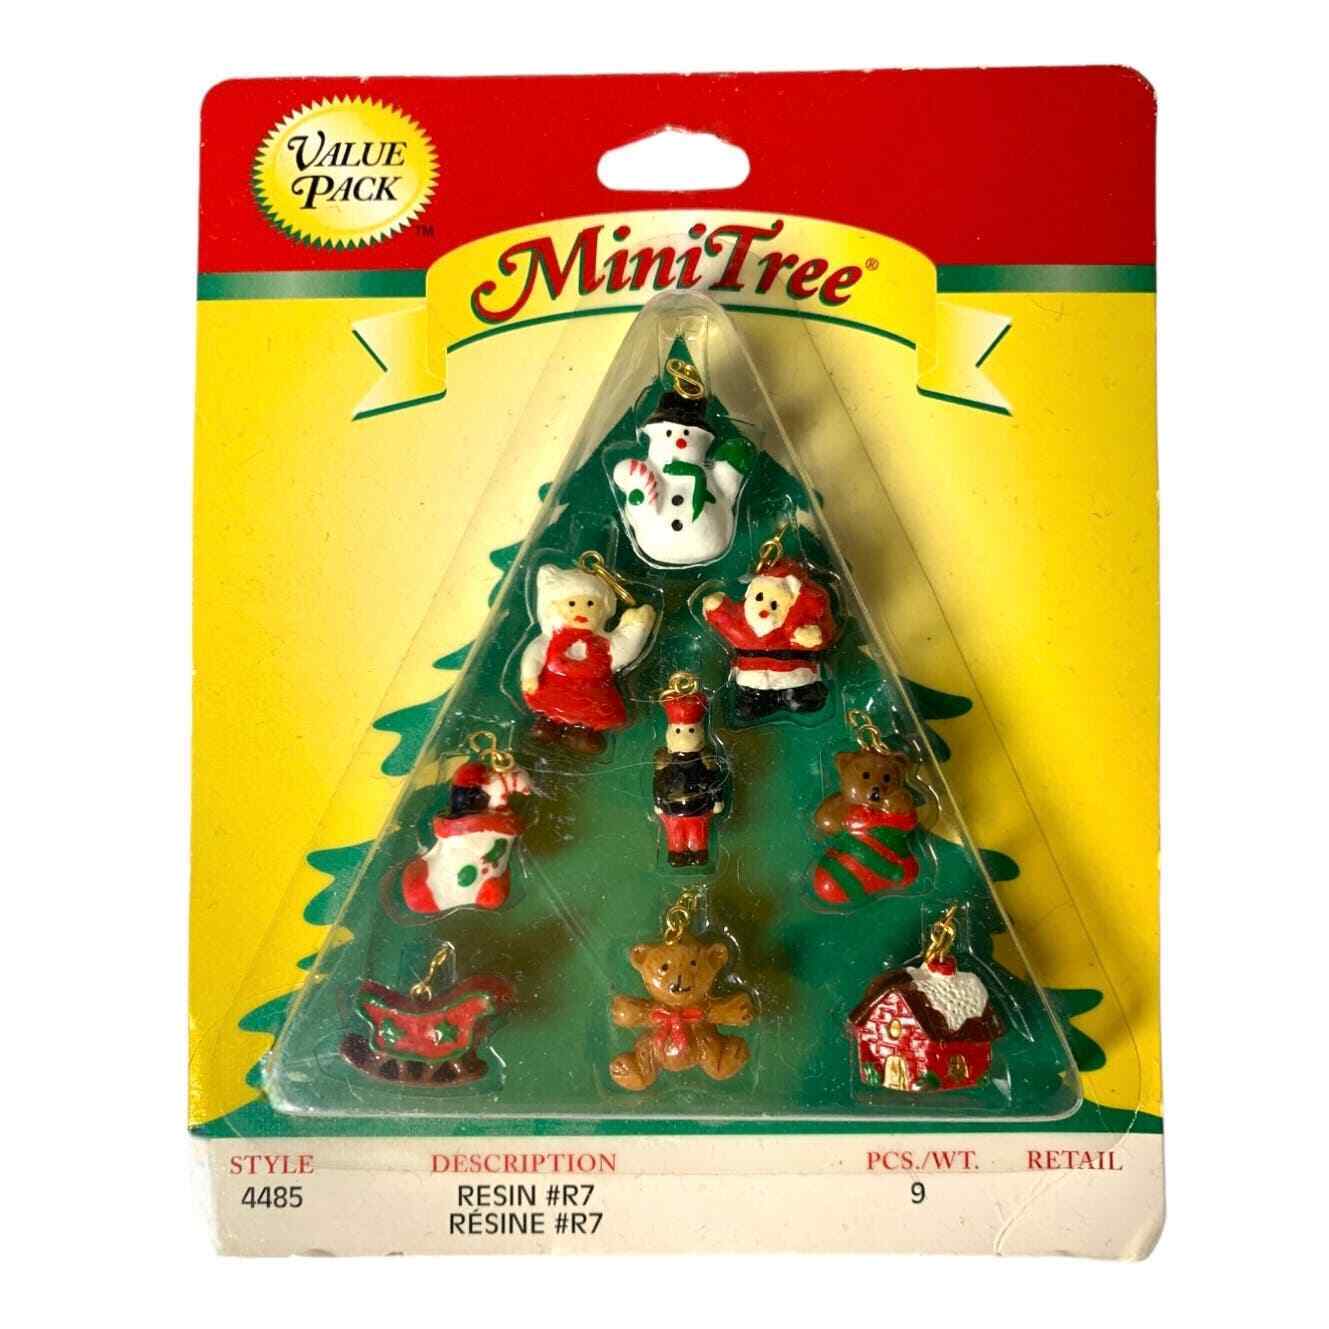 Westrim Miniature Christmas Tree Ornaments Vintage Resin R7 Mini Tree #4485